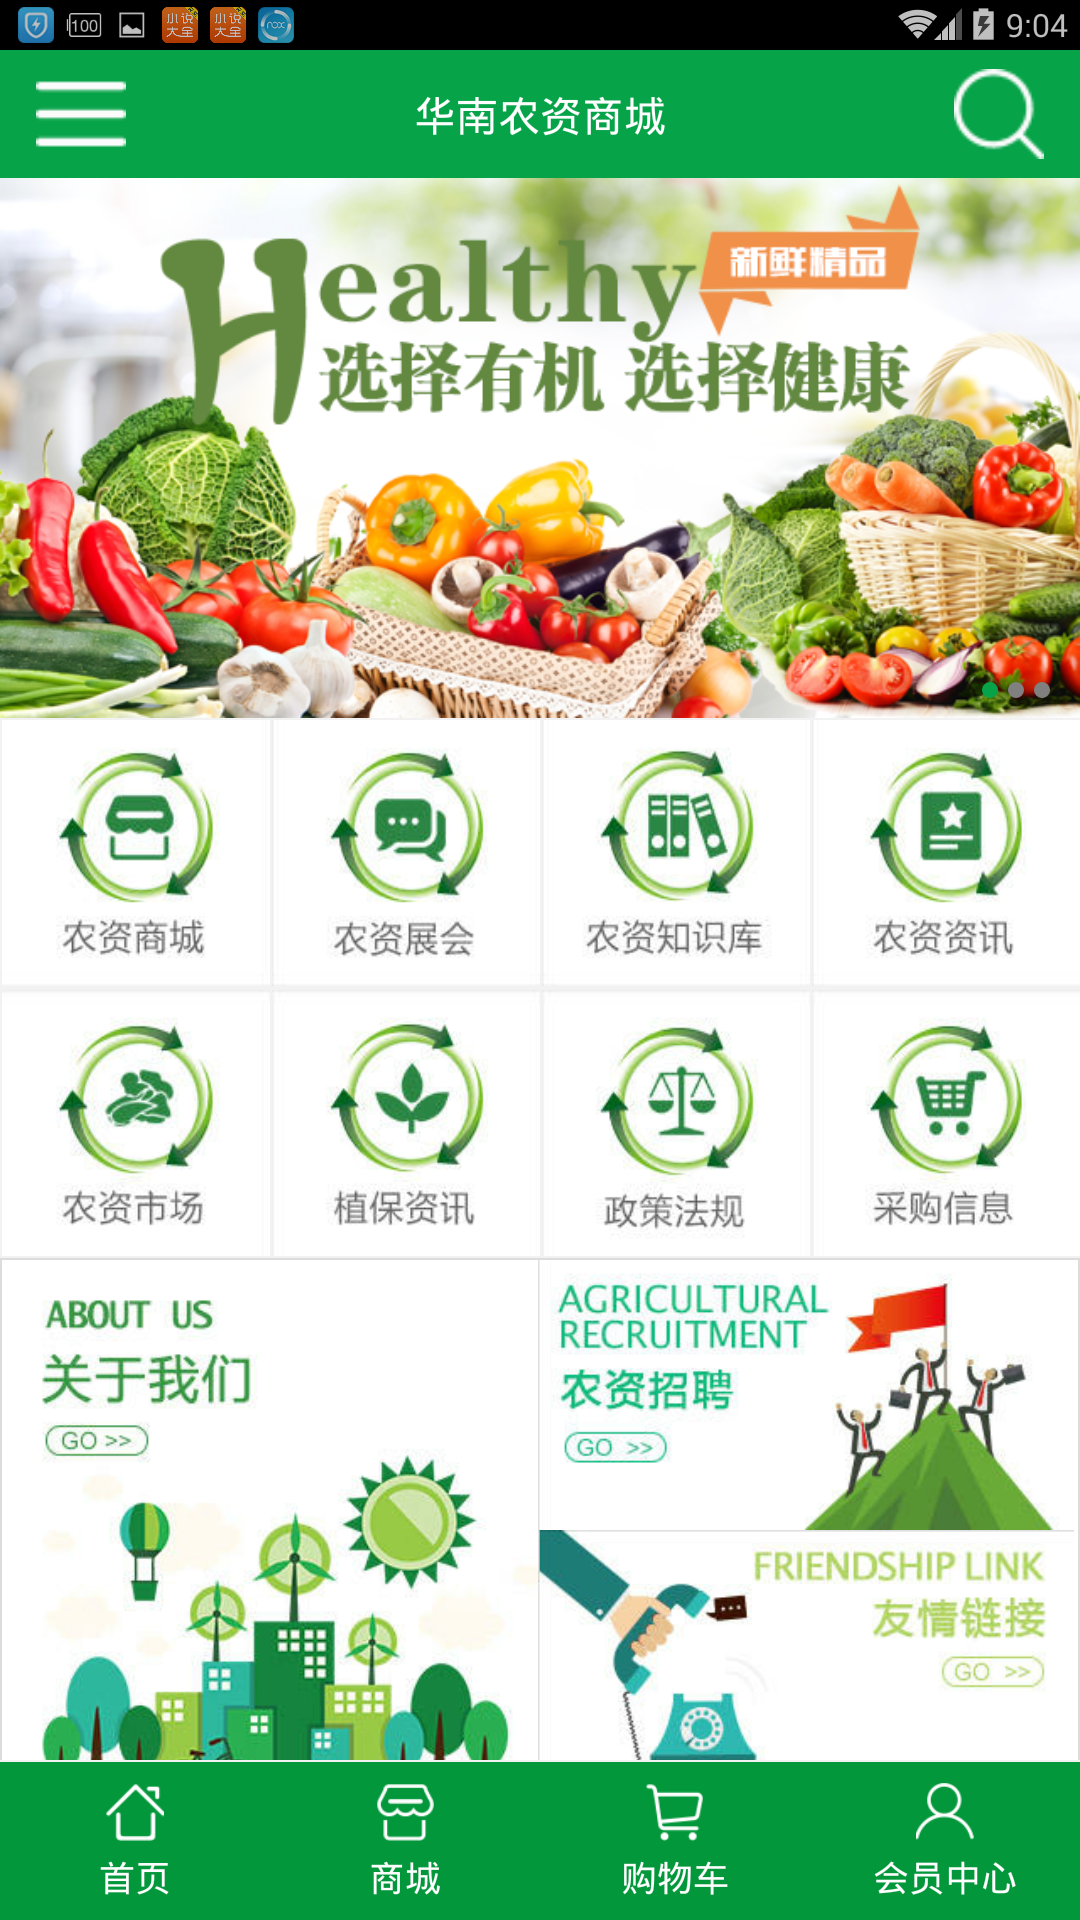 天博官方网华南农资商城正式上线催生互联网期间农业新形式(图2)